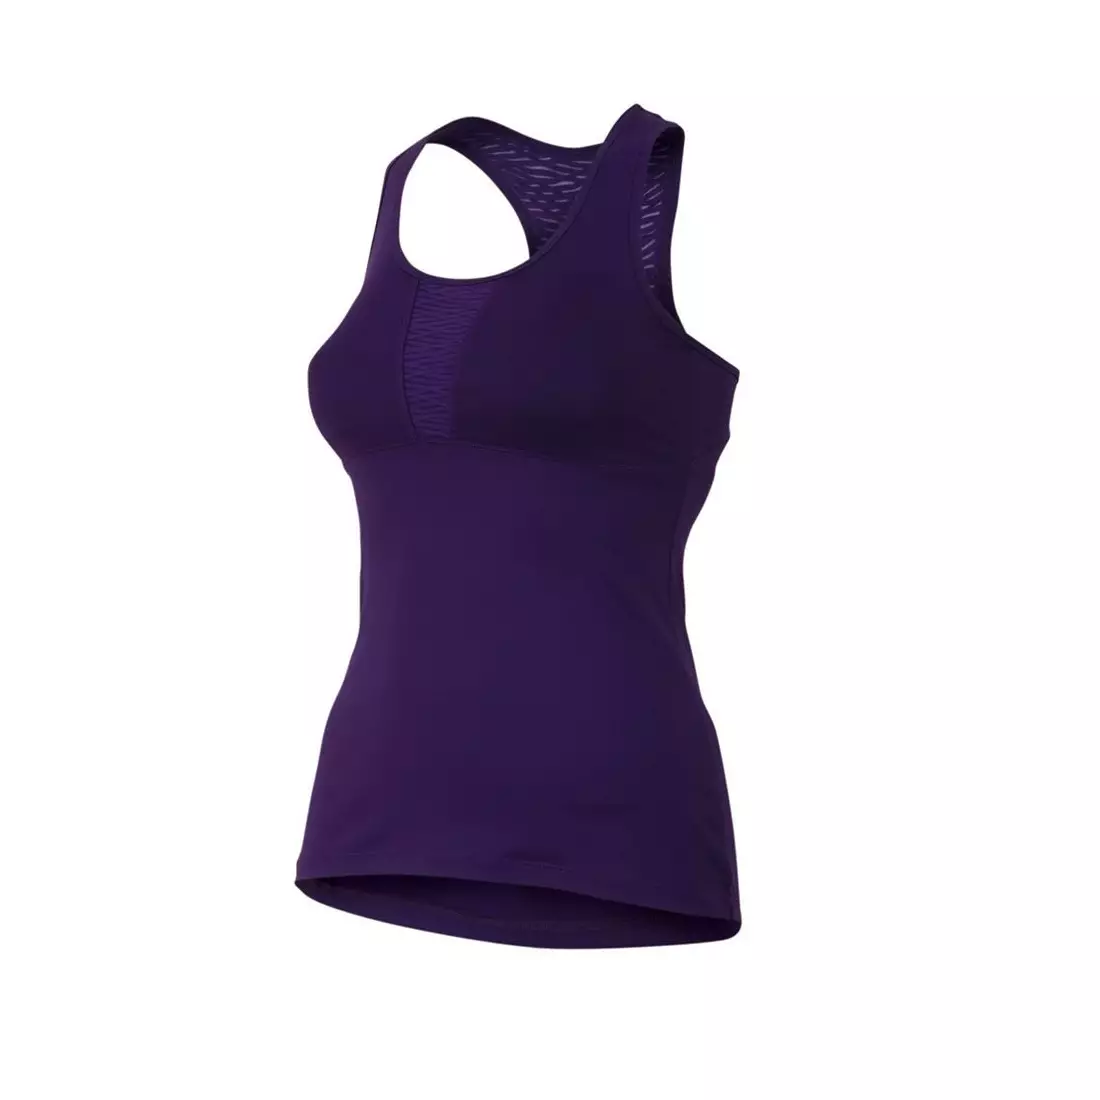 PEARL IZUMI - 12221405-3ZW FLY SPORT TANK - tricou pentru alergare dama, culoare: Violet